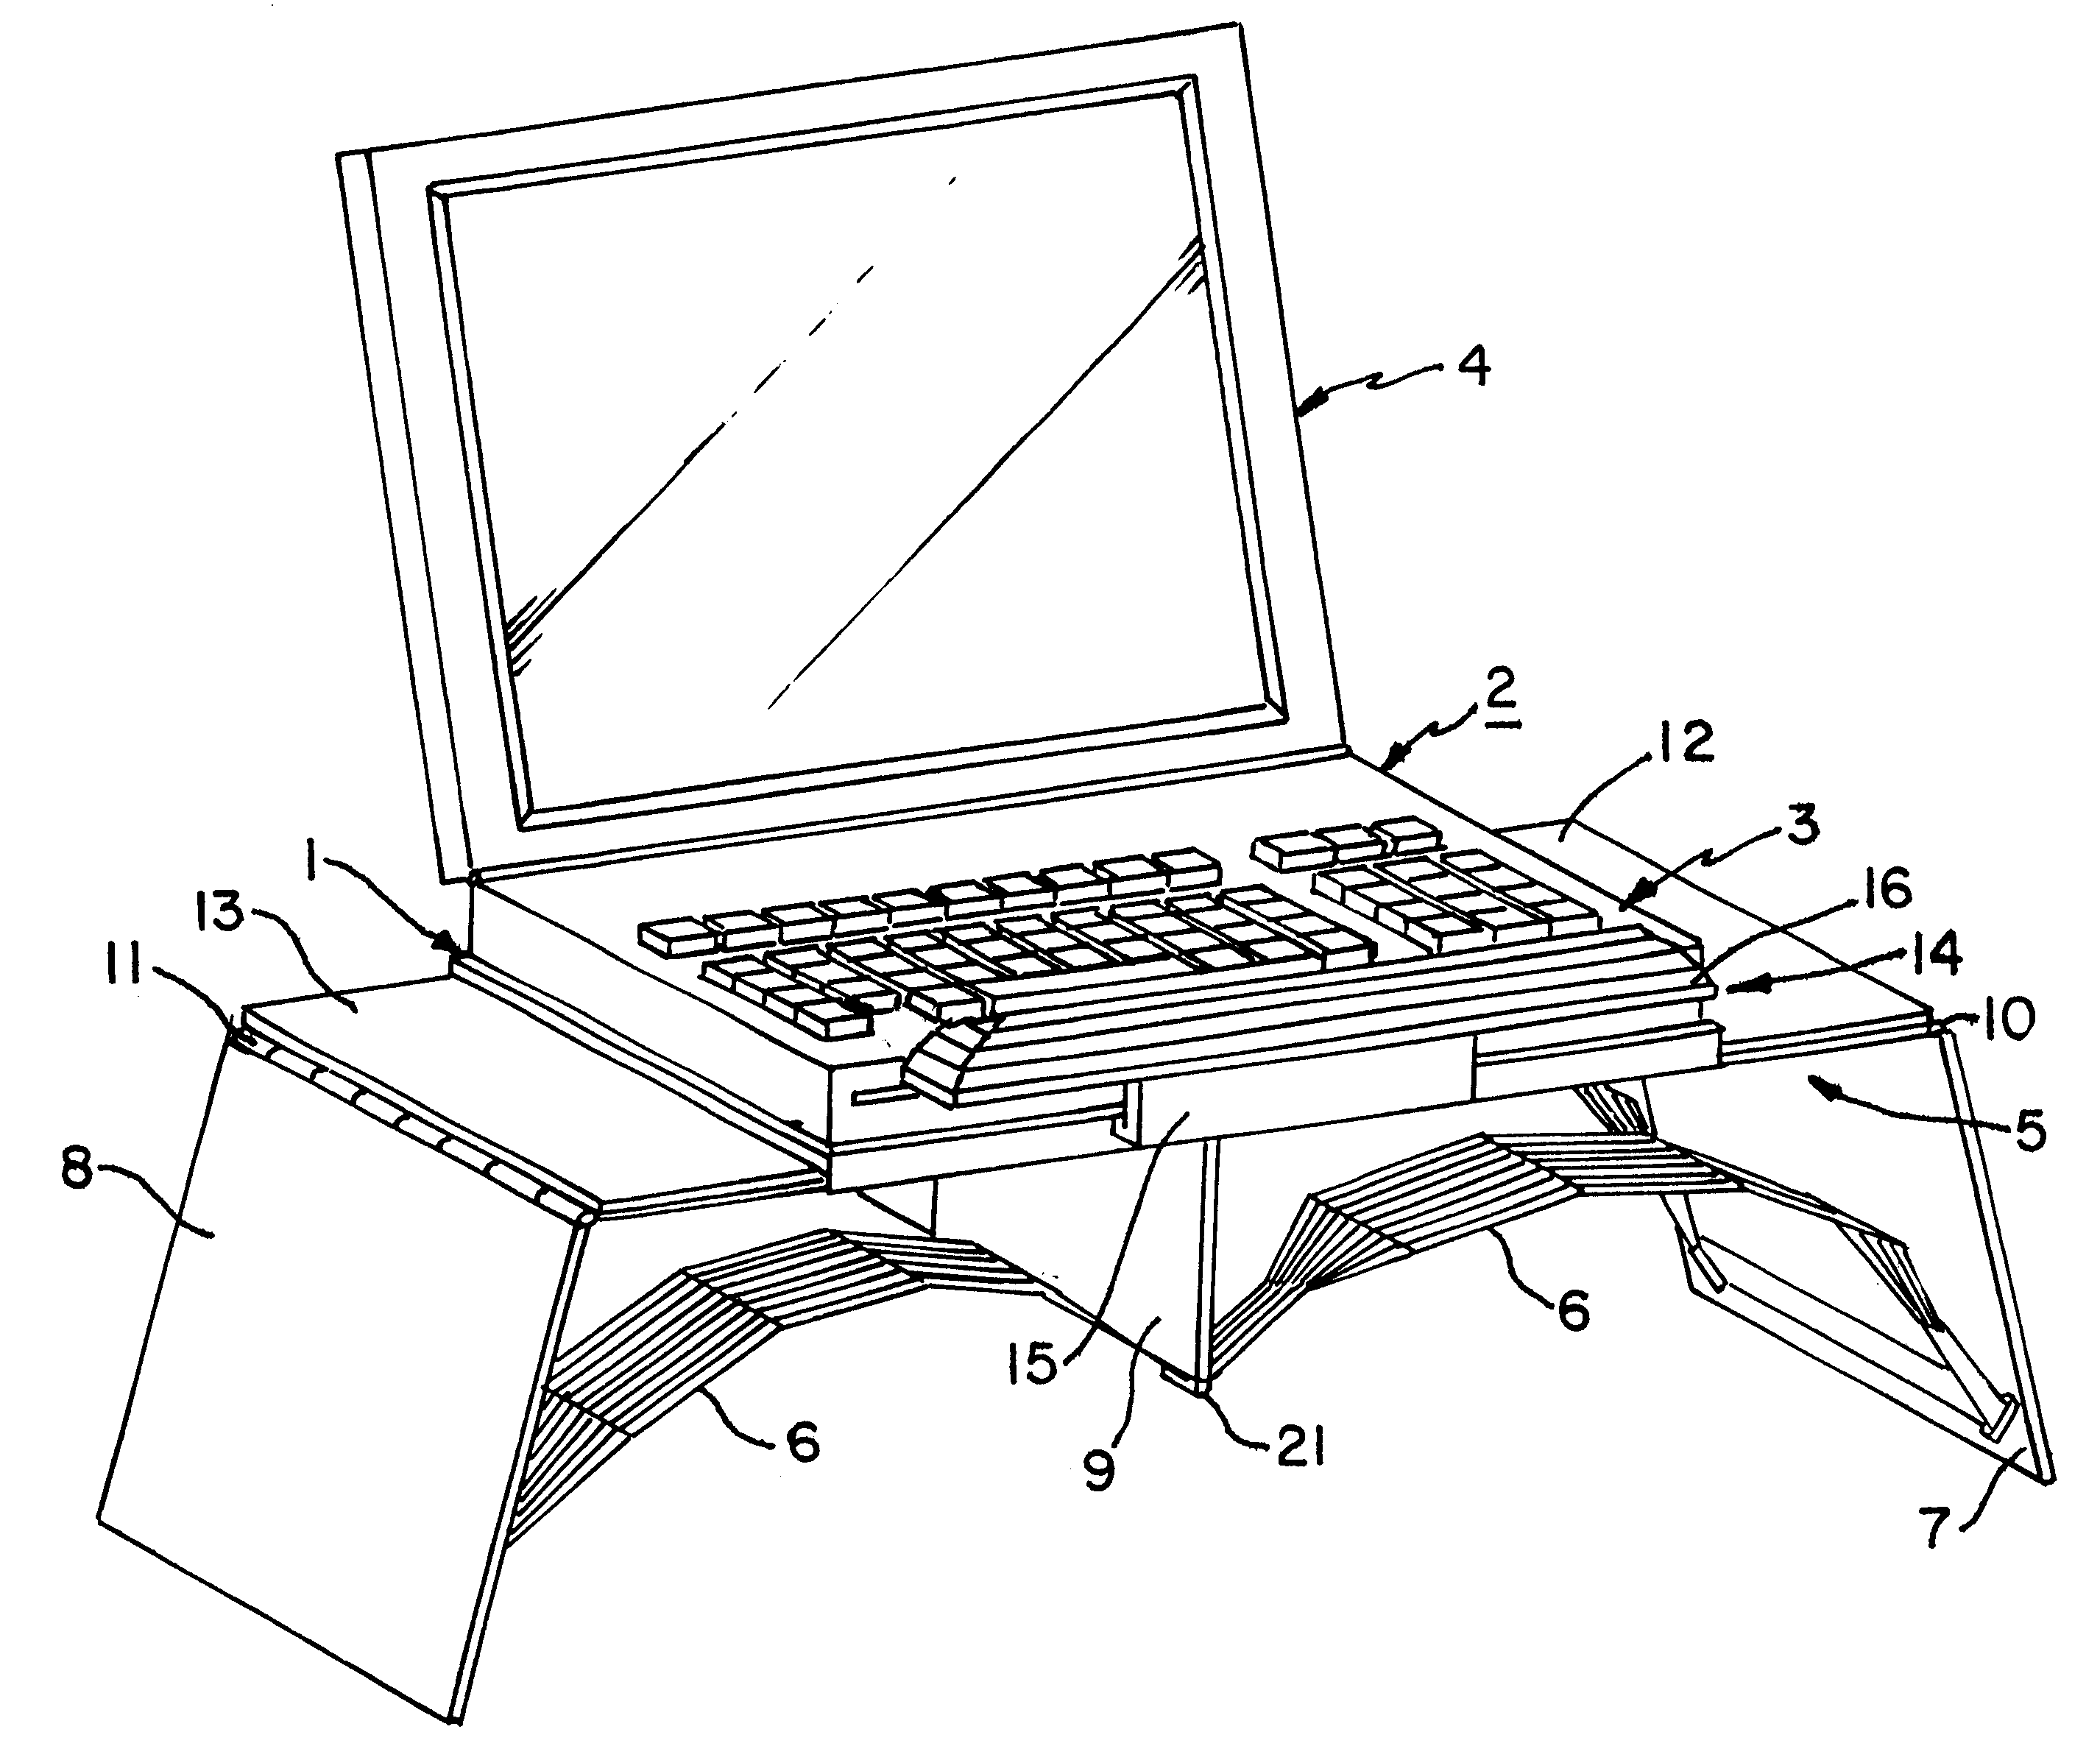 Laptop portable computer desk